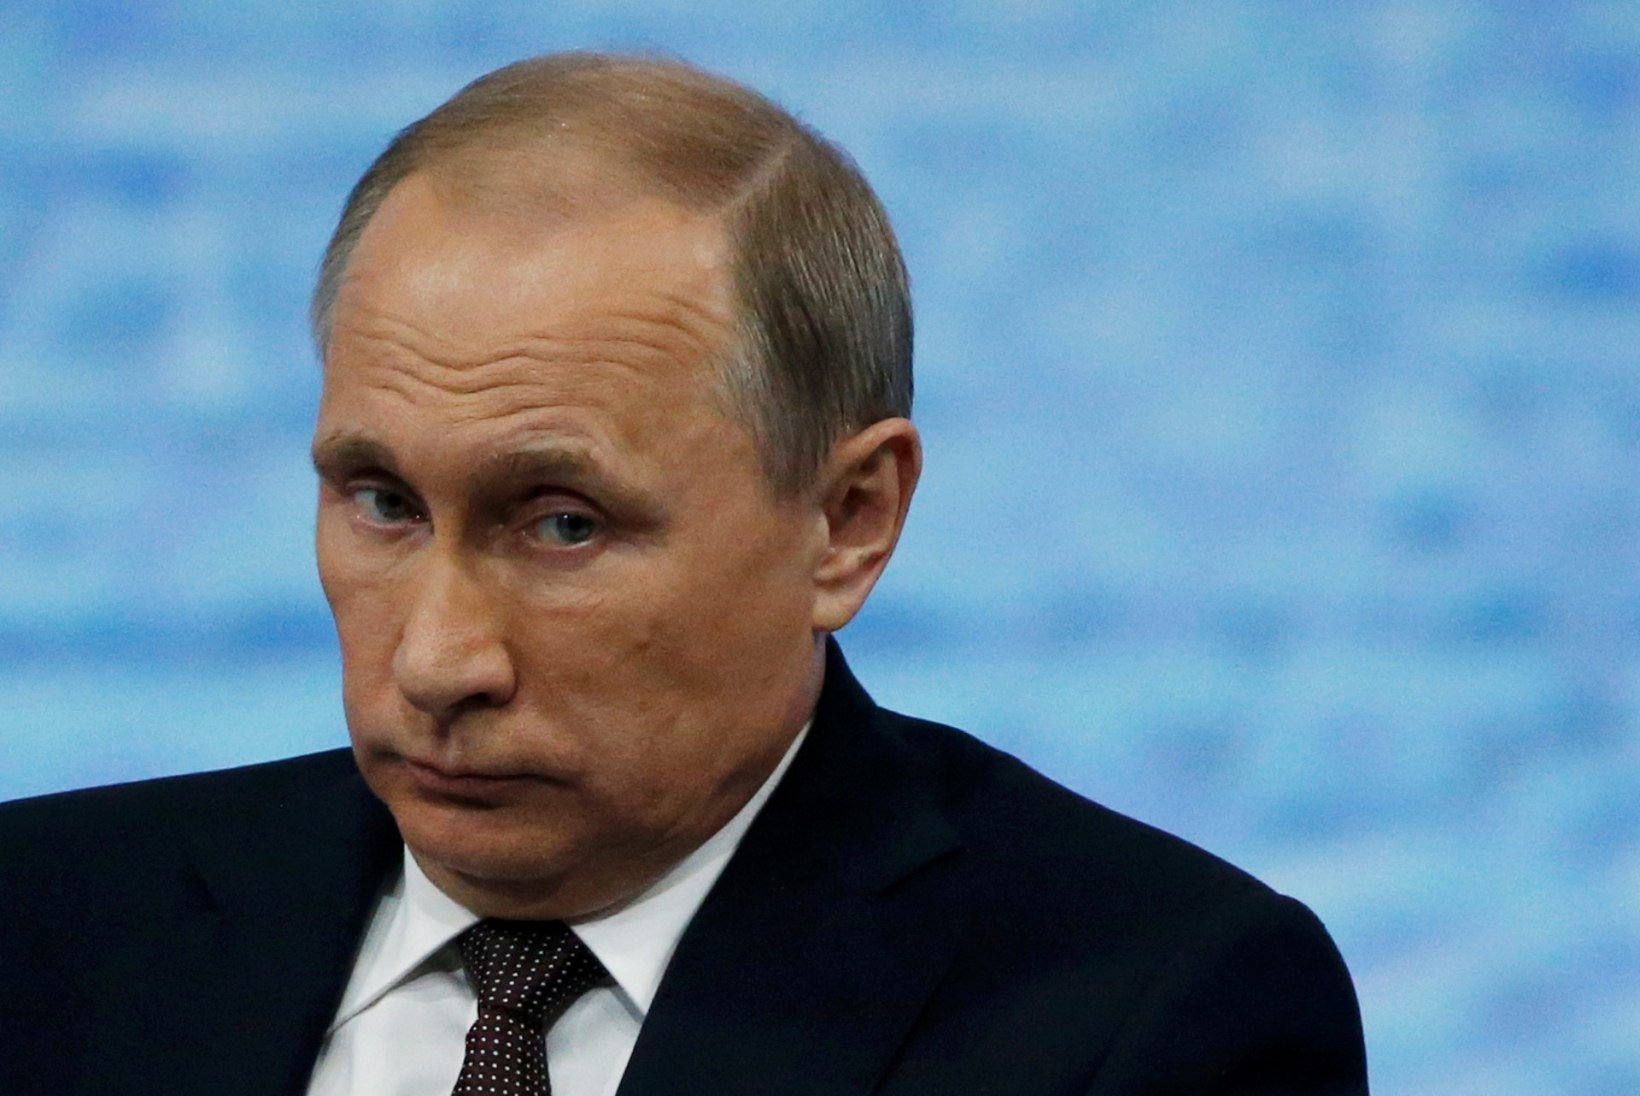 Kas Putin vaatas venelaste eilset mängu? "Ei, ta tutvus Lenfilmiga, kus asjad on oluliselt paremad."